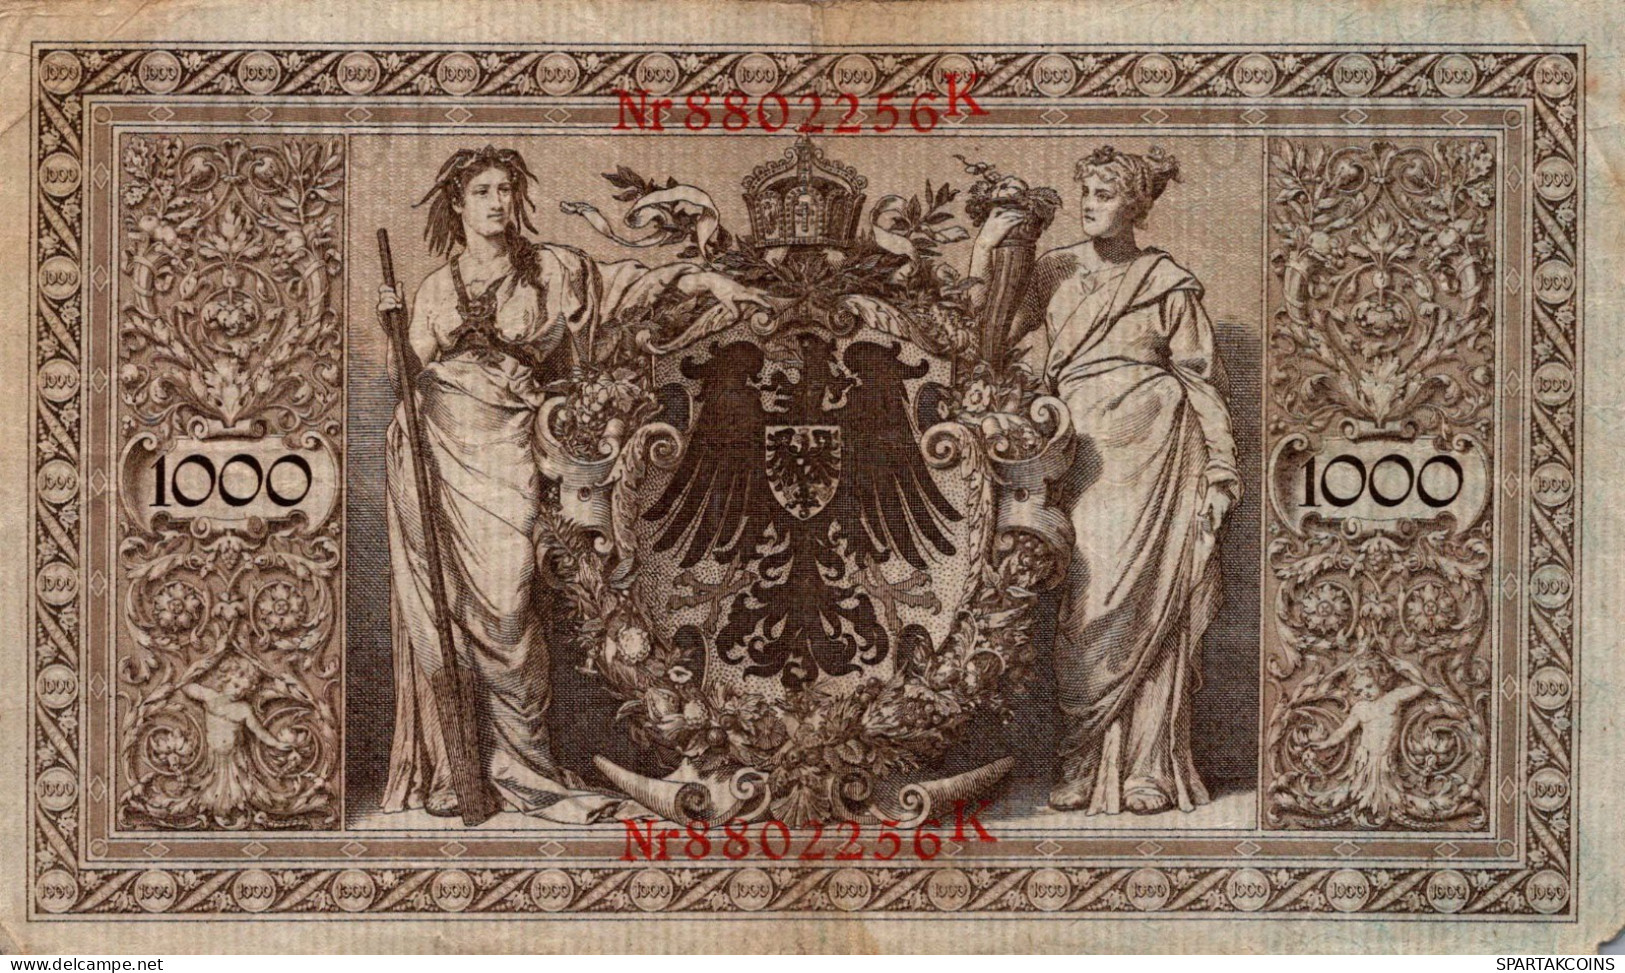 1000 MARK 1910 DEUTSCHLAND Papiergeld Banknote #PL277 - [11] Emissions Locales